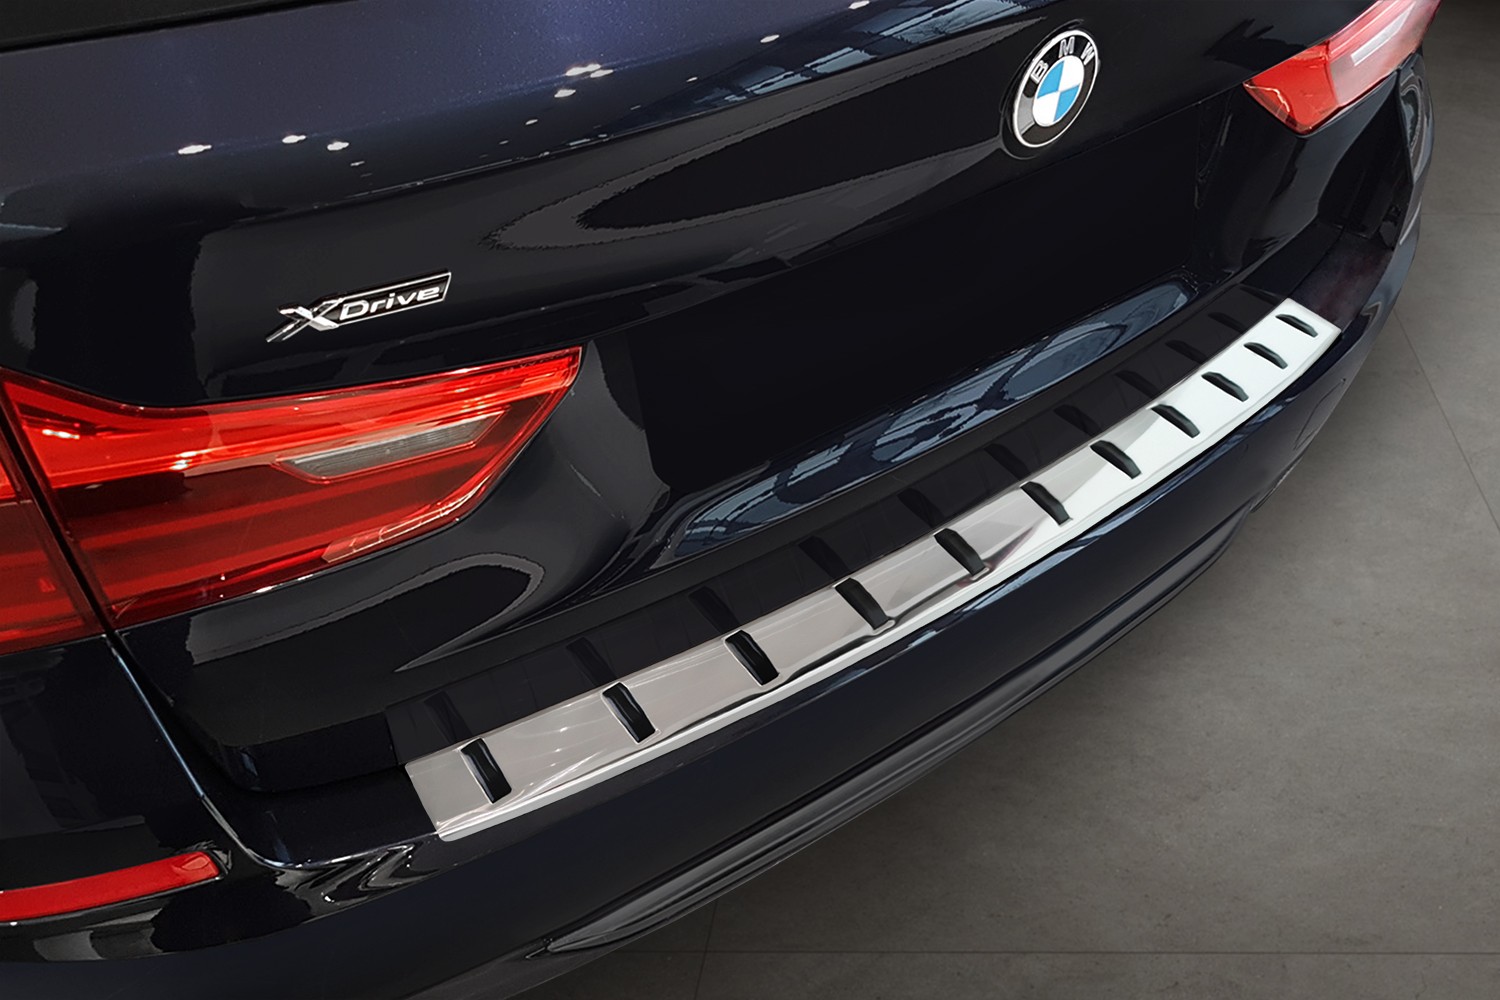 Ladekantenschutz V2A schwarz passend für BMW 5er Touring (G31)